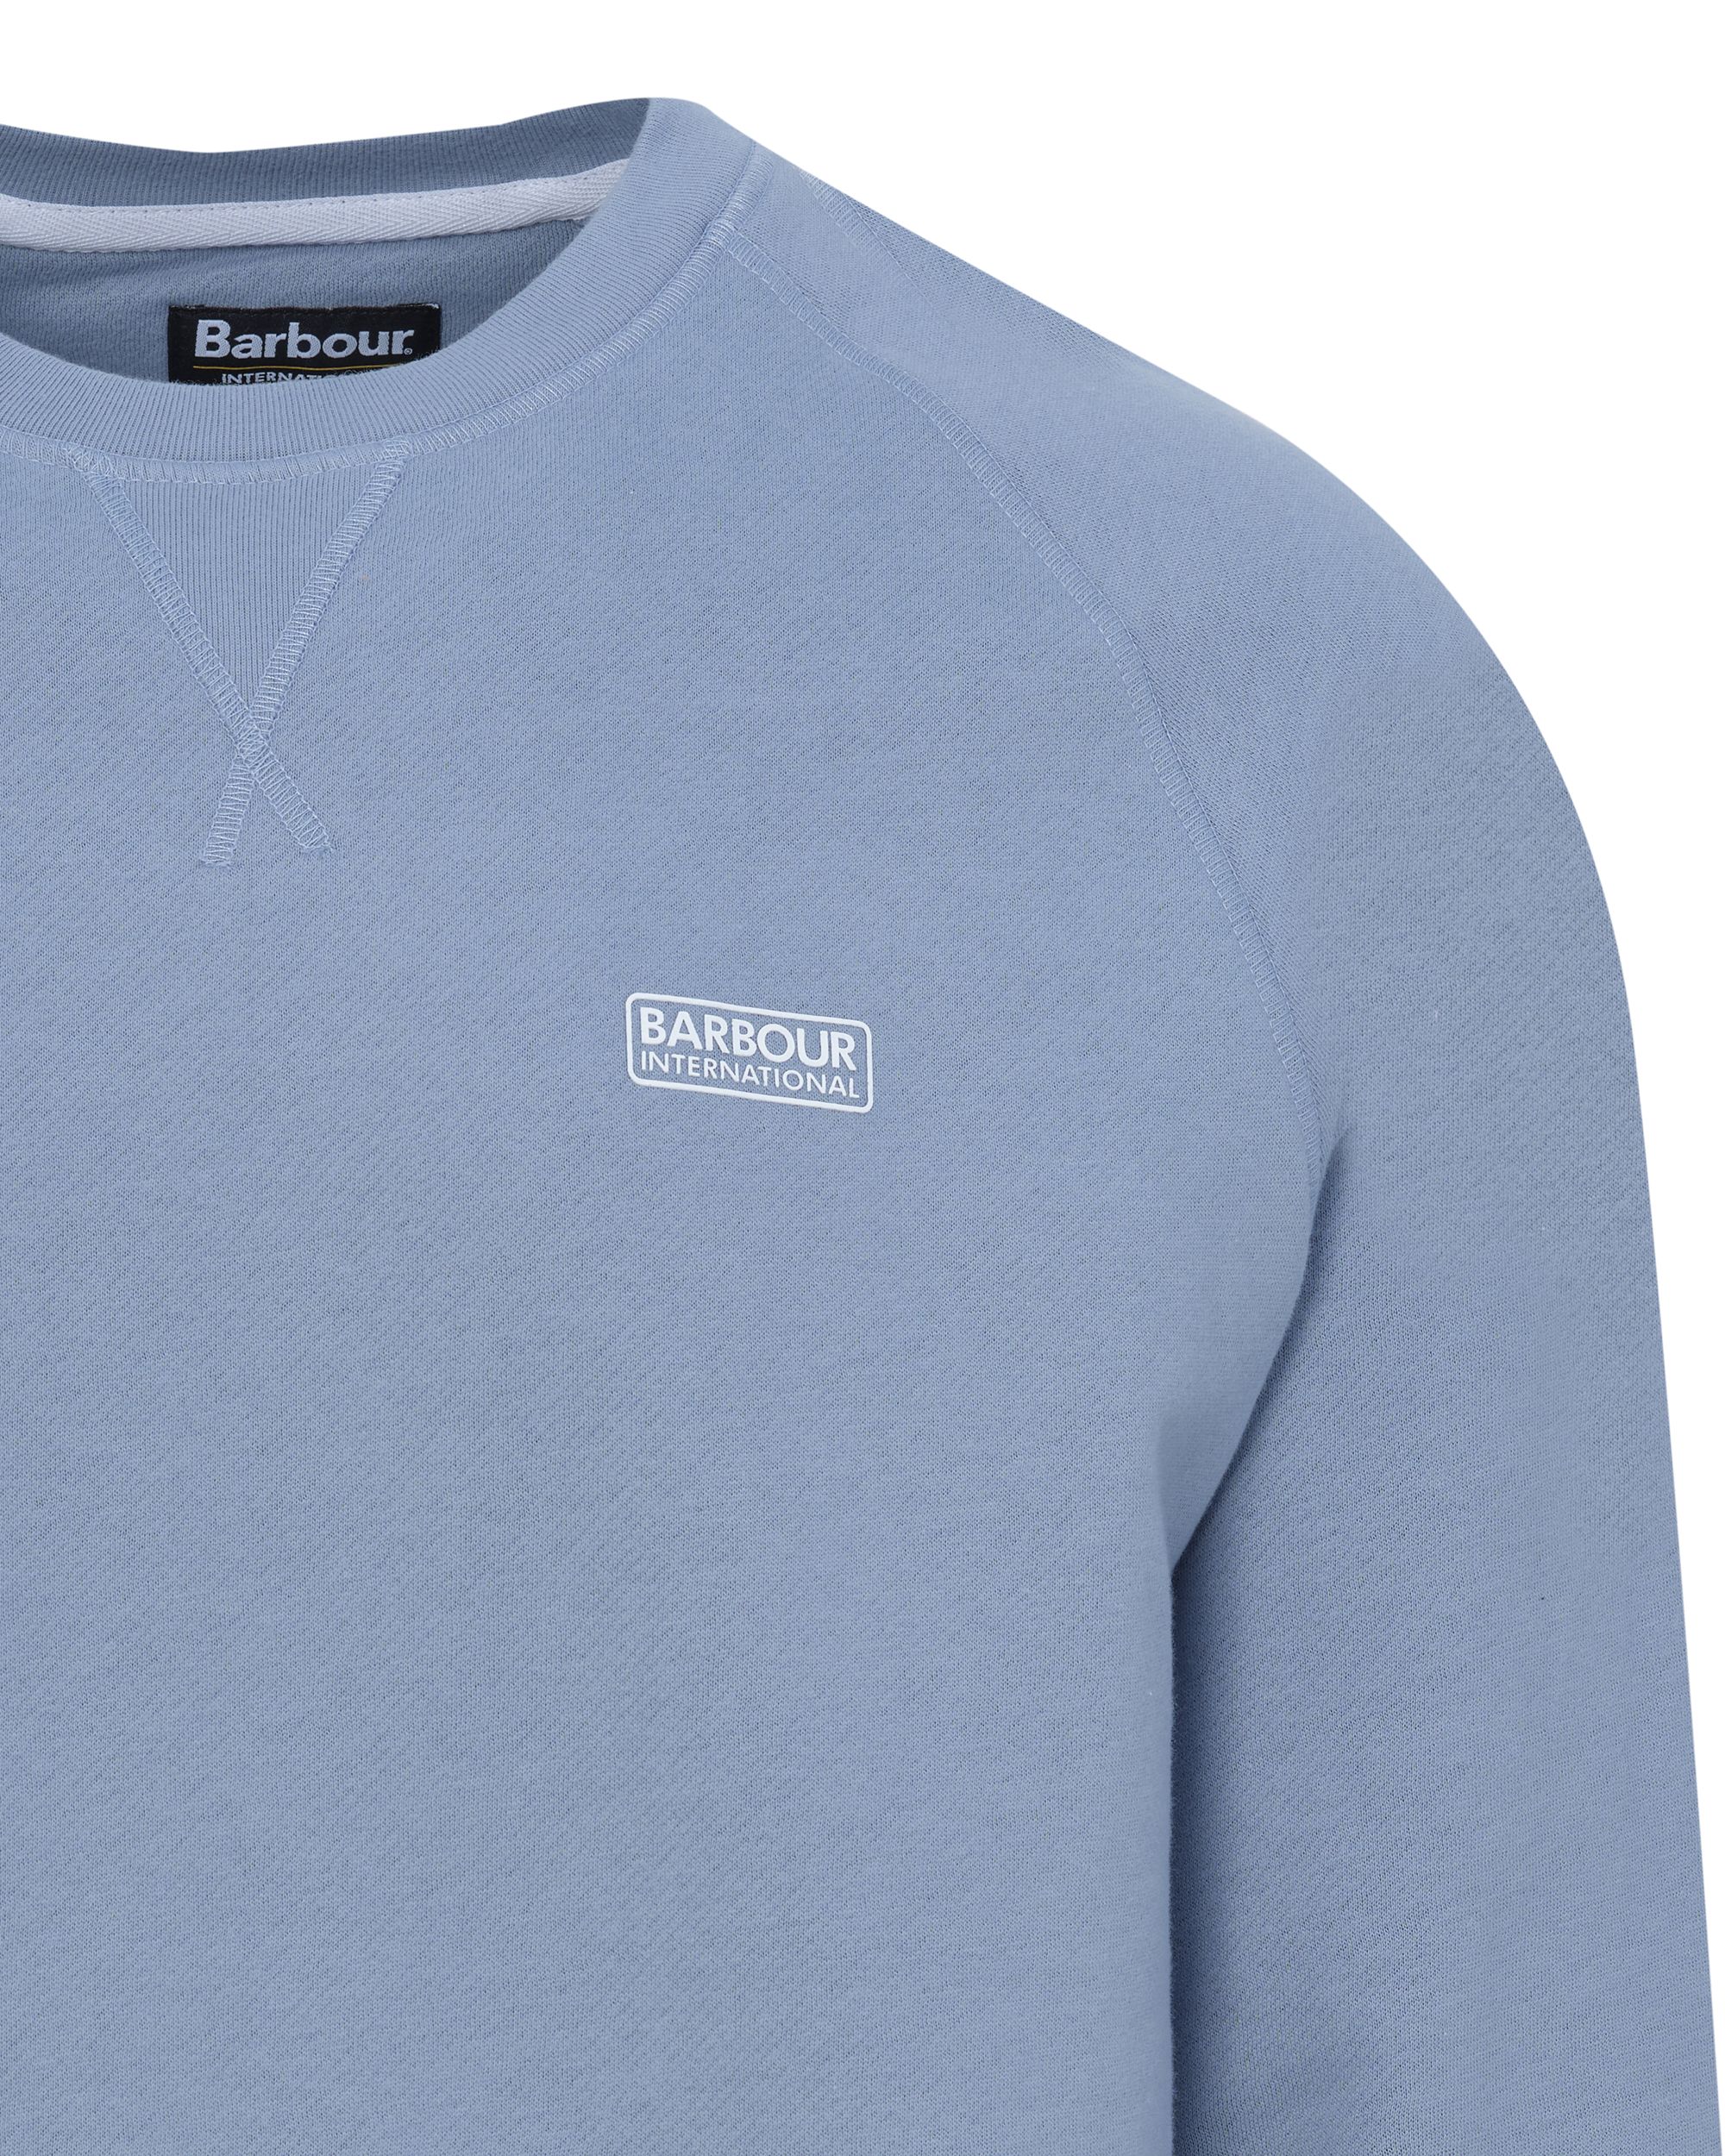 Barbour International Sweater Licht blauw 083323-001-L